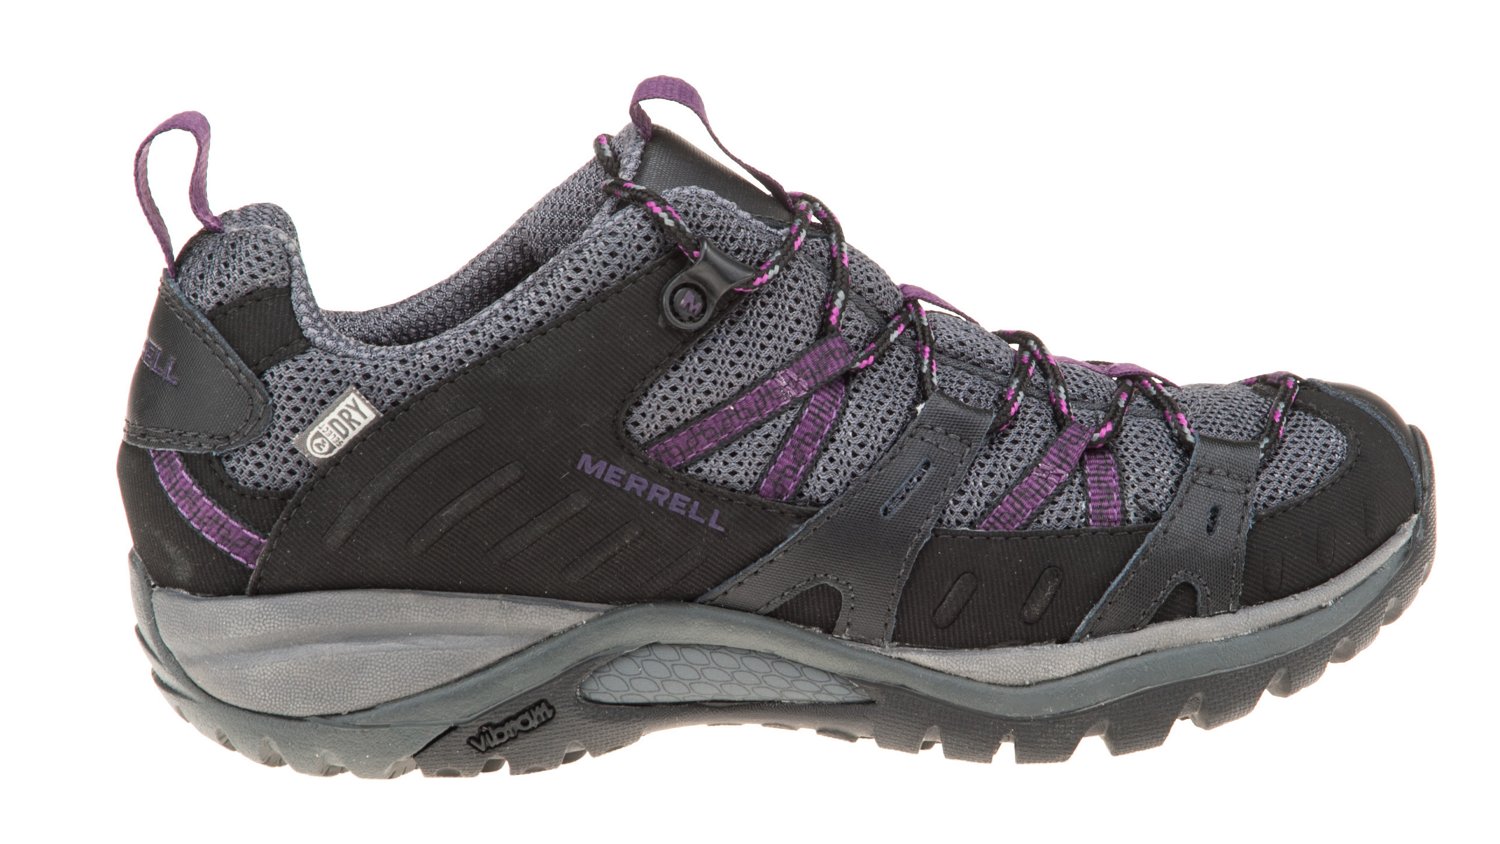 Academy - MerrellÂ® Women's Siren Sport Light Hiking Shoes